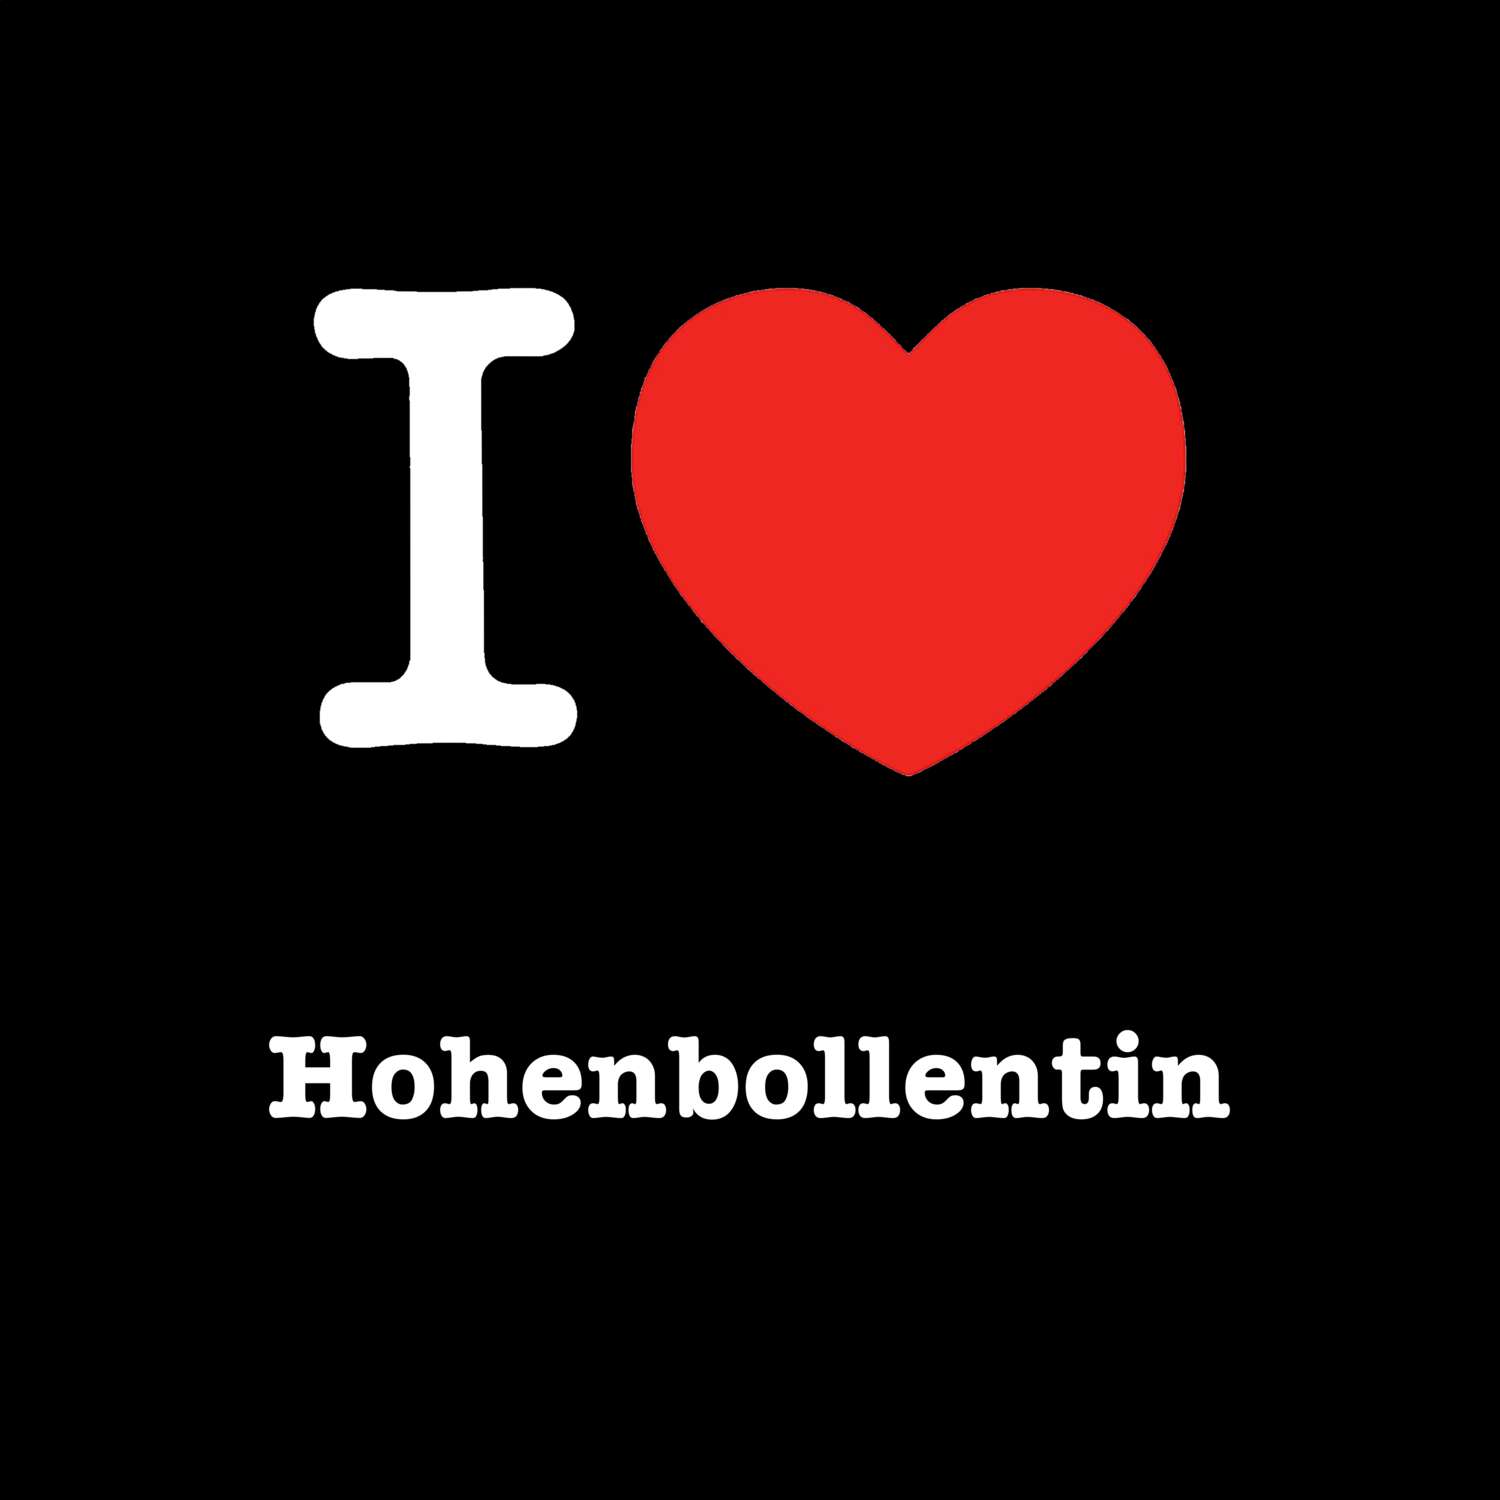 Hohenbollentin T-Shirt »I love«